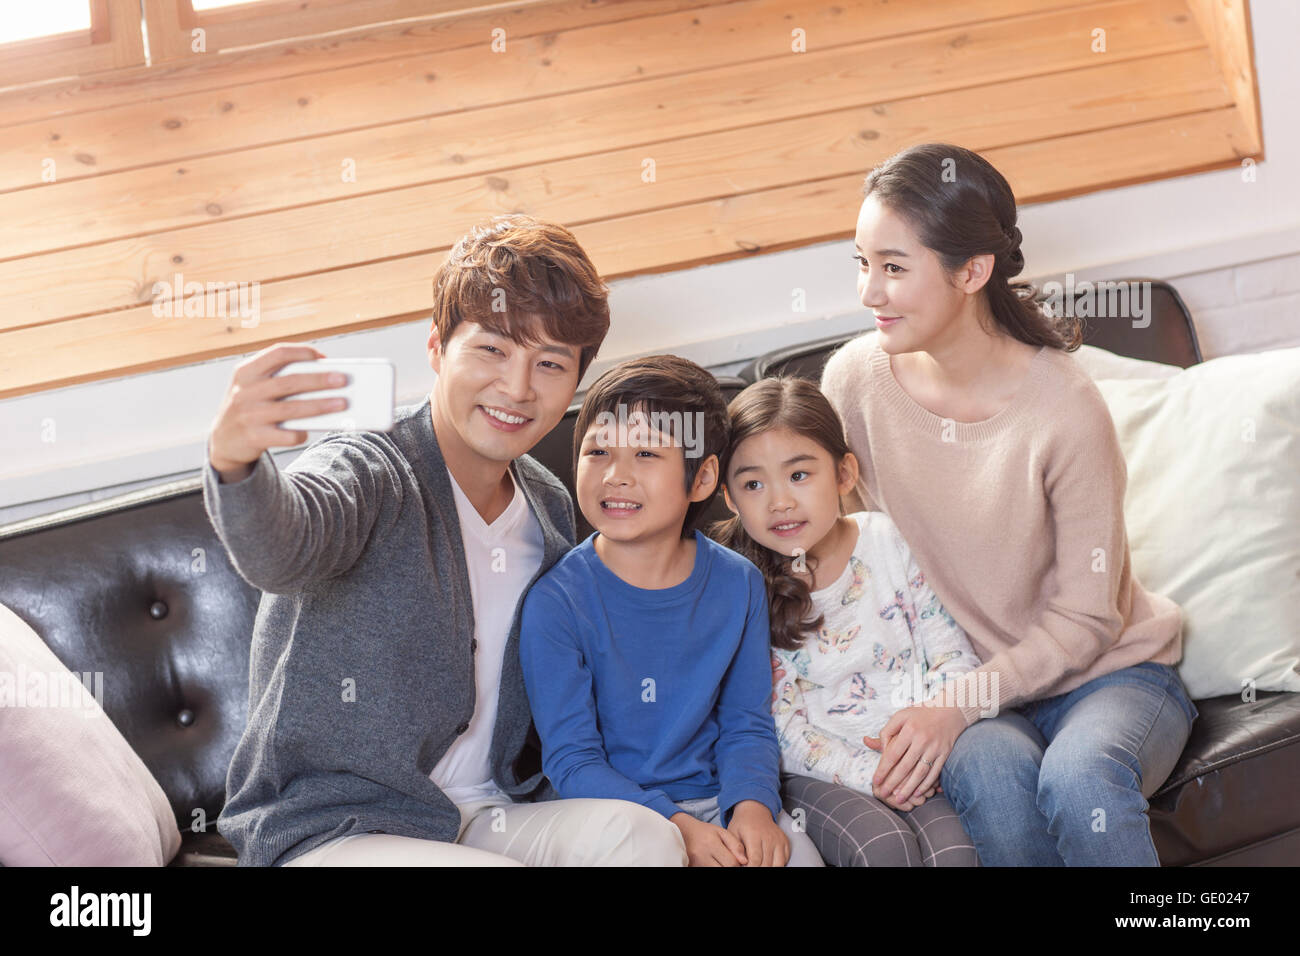 Harmonious family posing to take a selfie Stock Photo